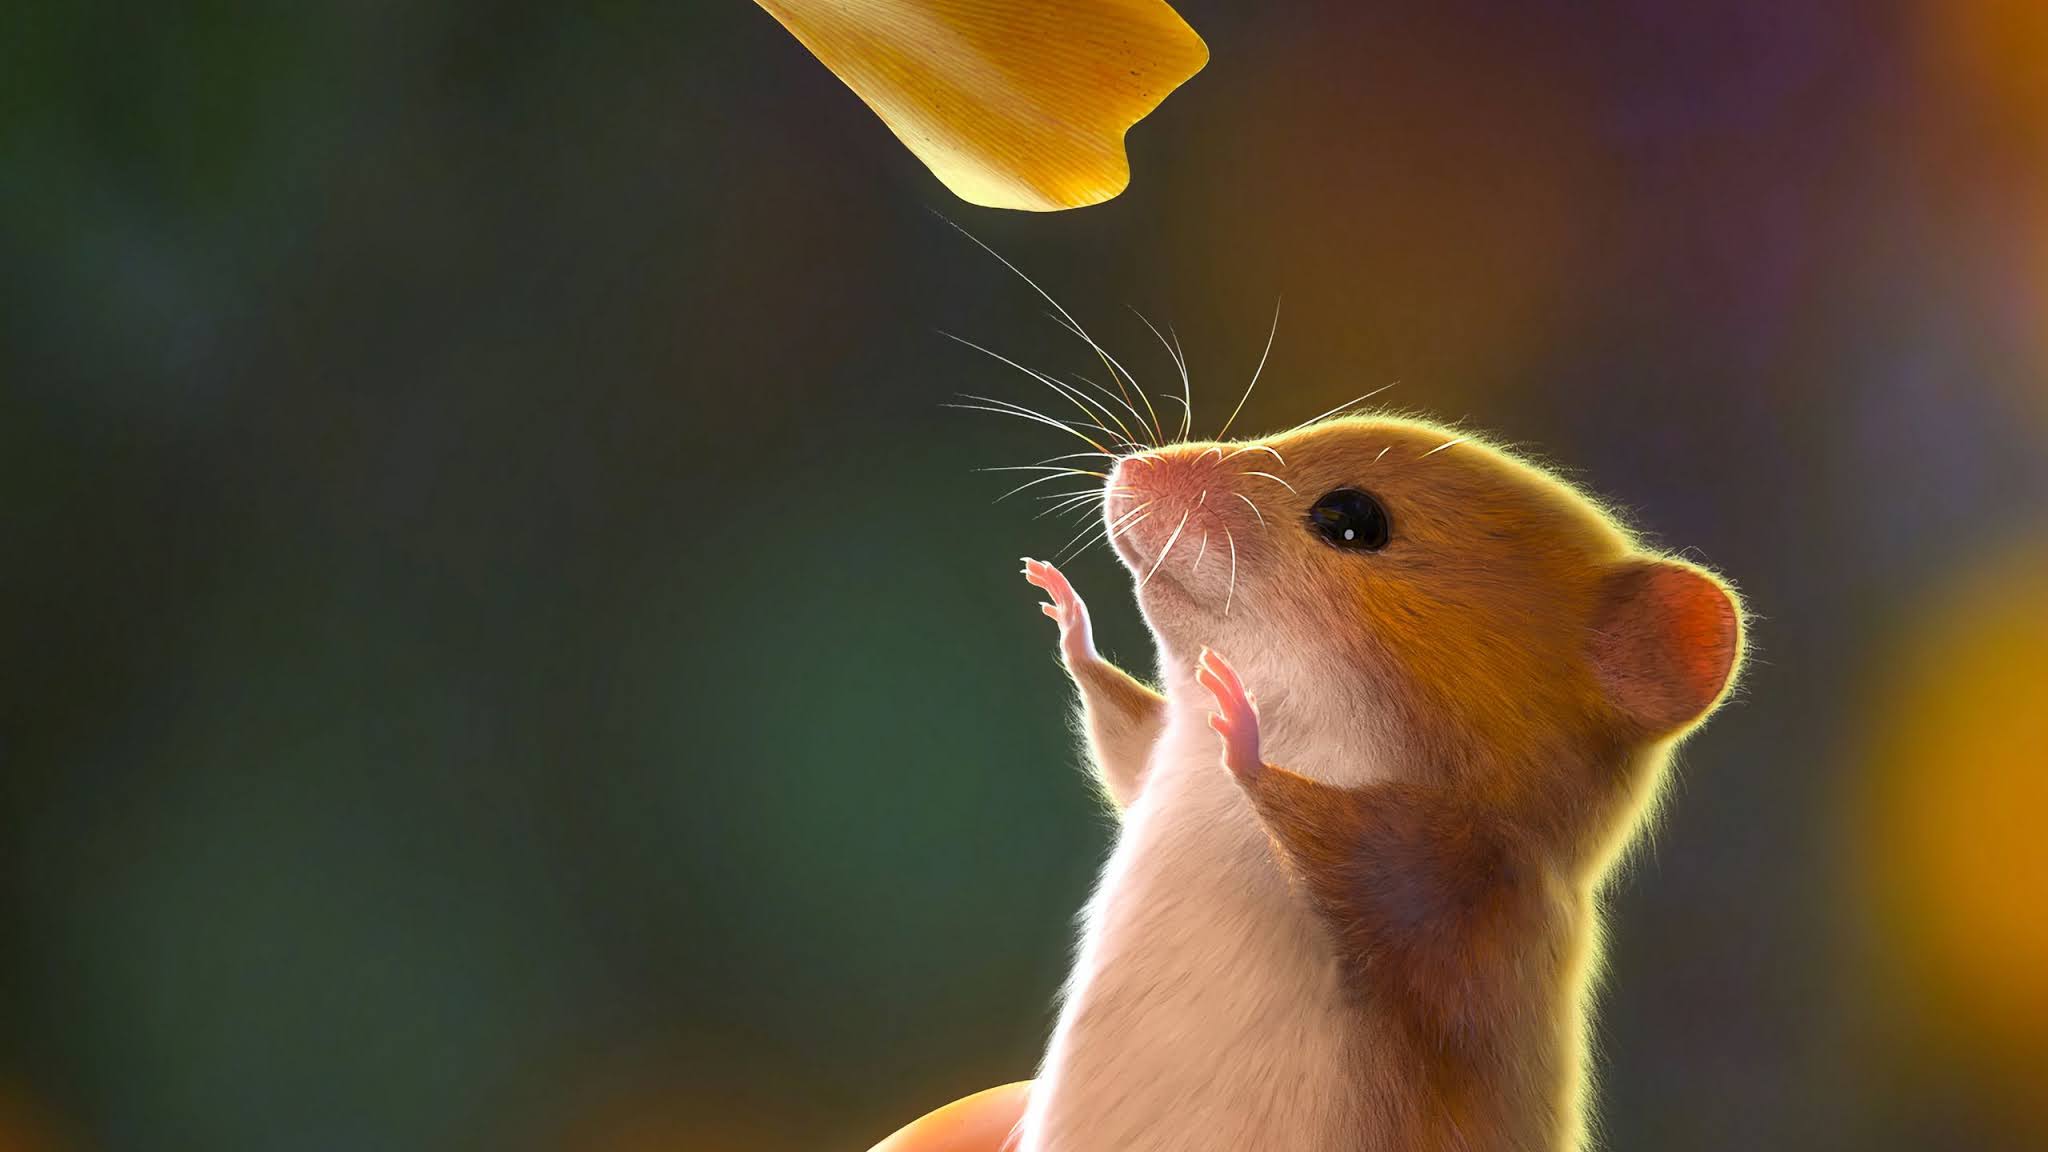 89+ hình ảnh chuột hamster siêu cute và dễ thương nhất 2023 - ALONGWALKER